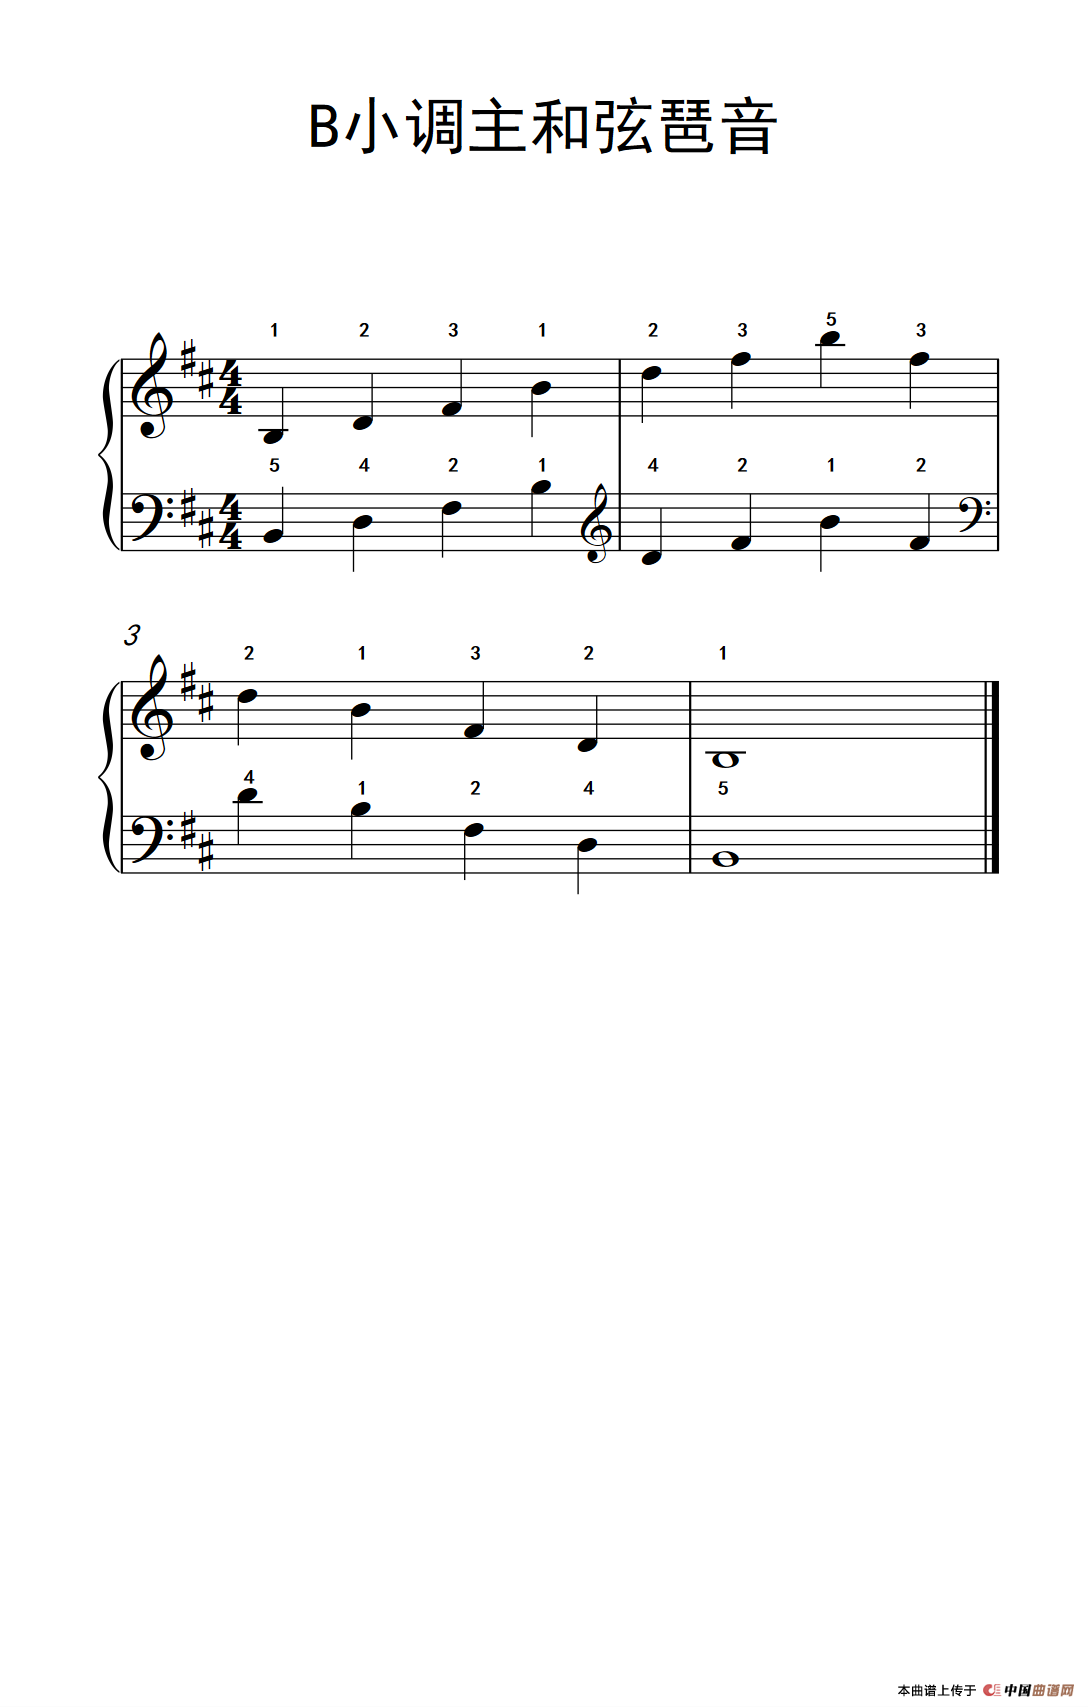 《B小调主和弦琶音》钢琴曲谱图分享